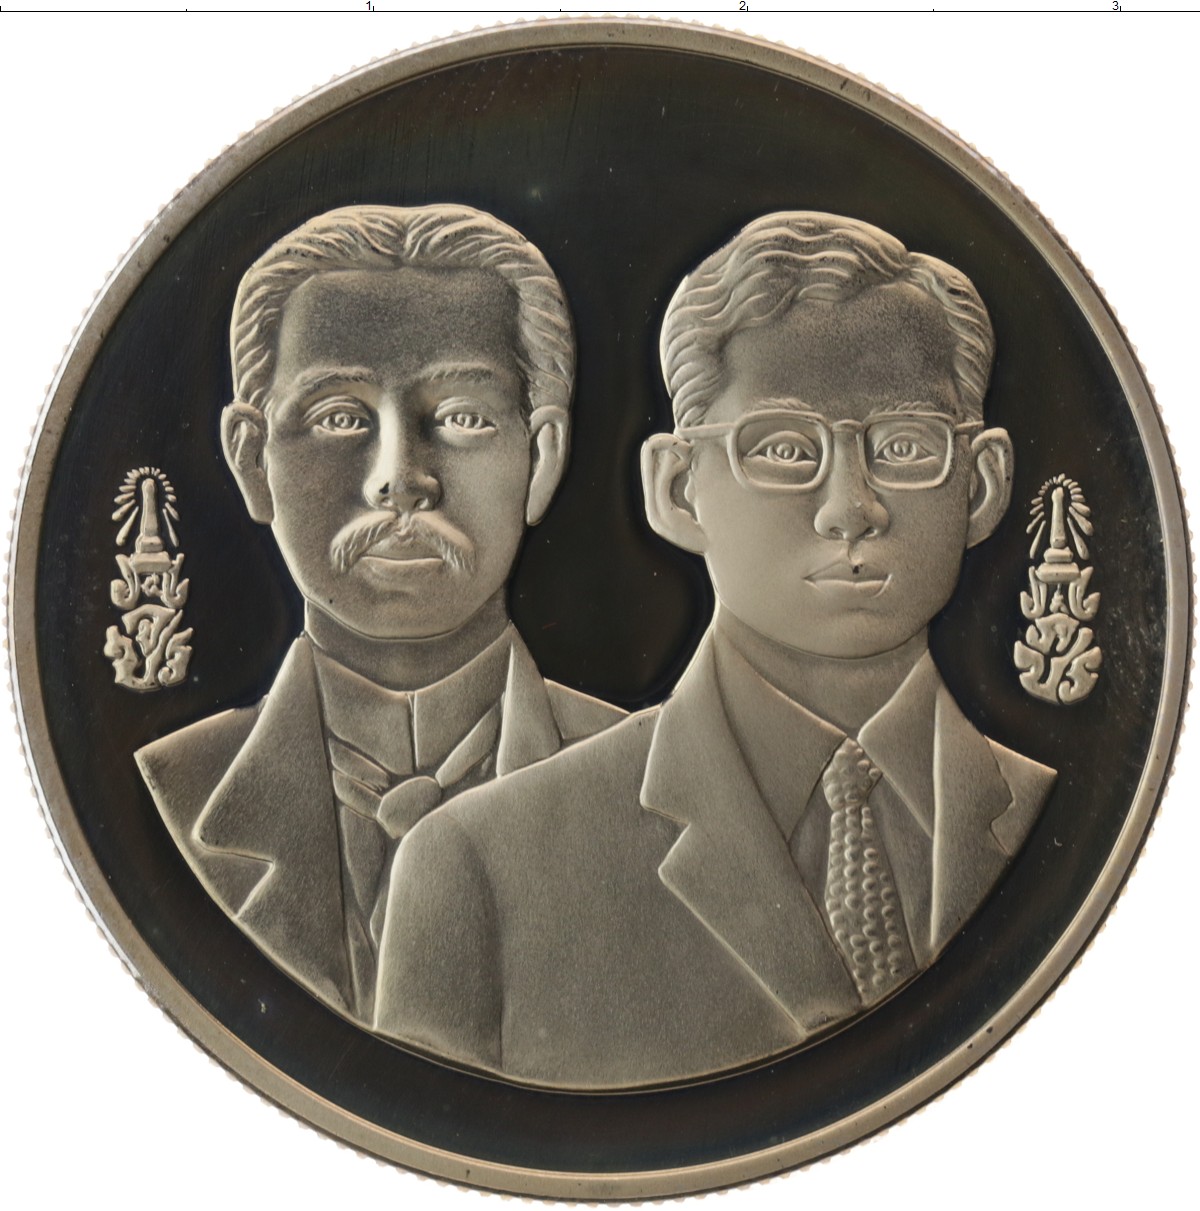 600 бат. Монета 20 Батов Таиланда. Медные монеты на алтарь предков Манга. Сколько стоит таиландская монета с картинкой какого-то человечка.